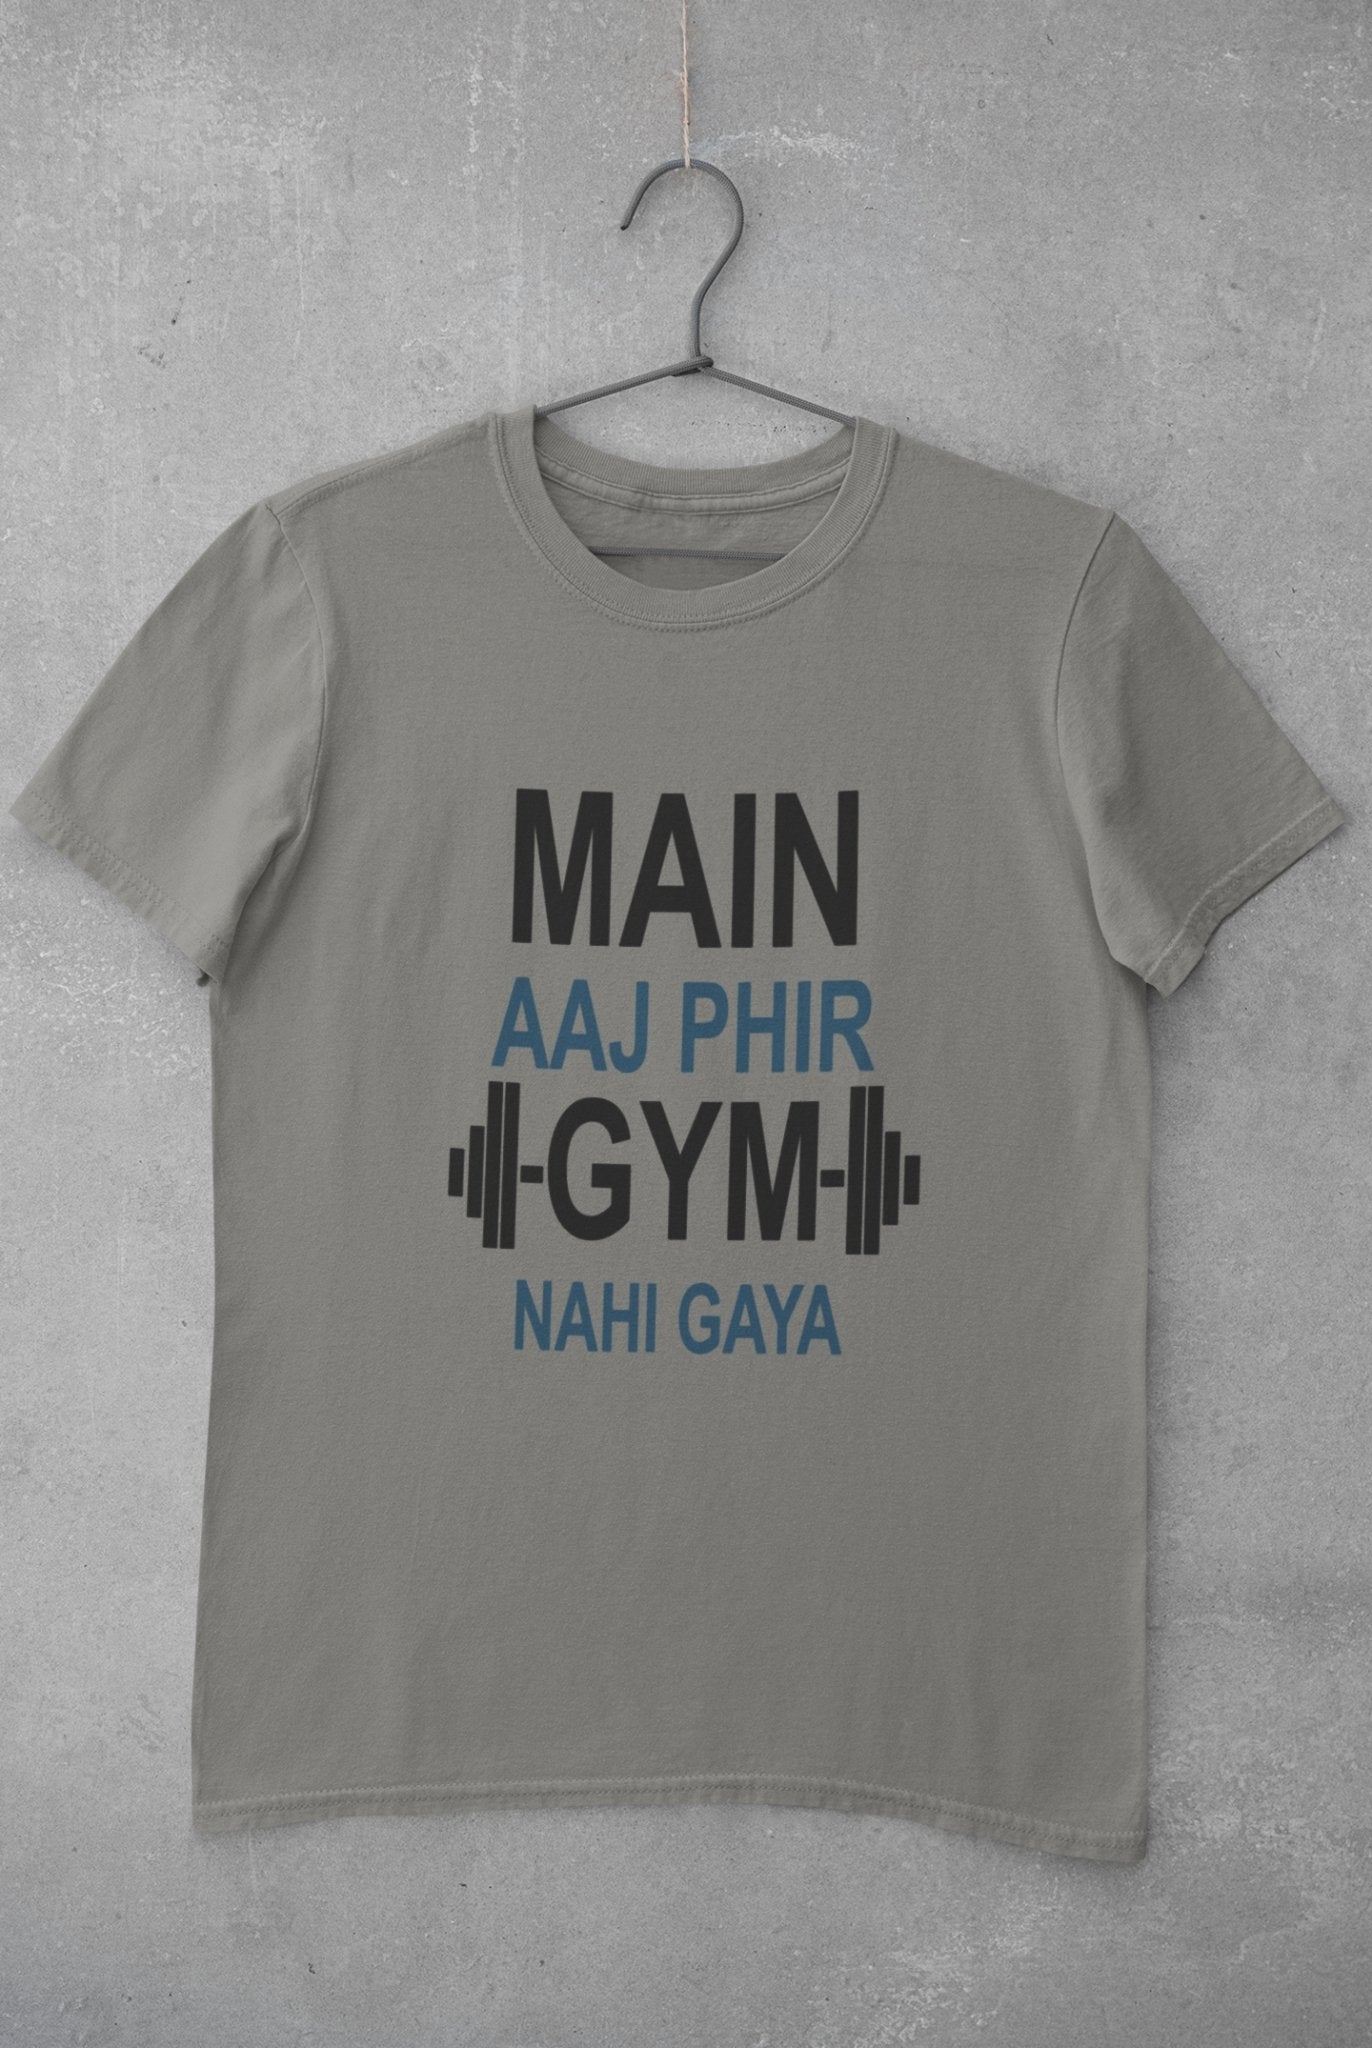 Main Aaj Phir Gym Nahi Gaya Mens Half Sleeves T-shirt- FunkyTeesClub - Funky Tees Club